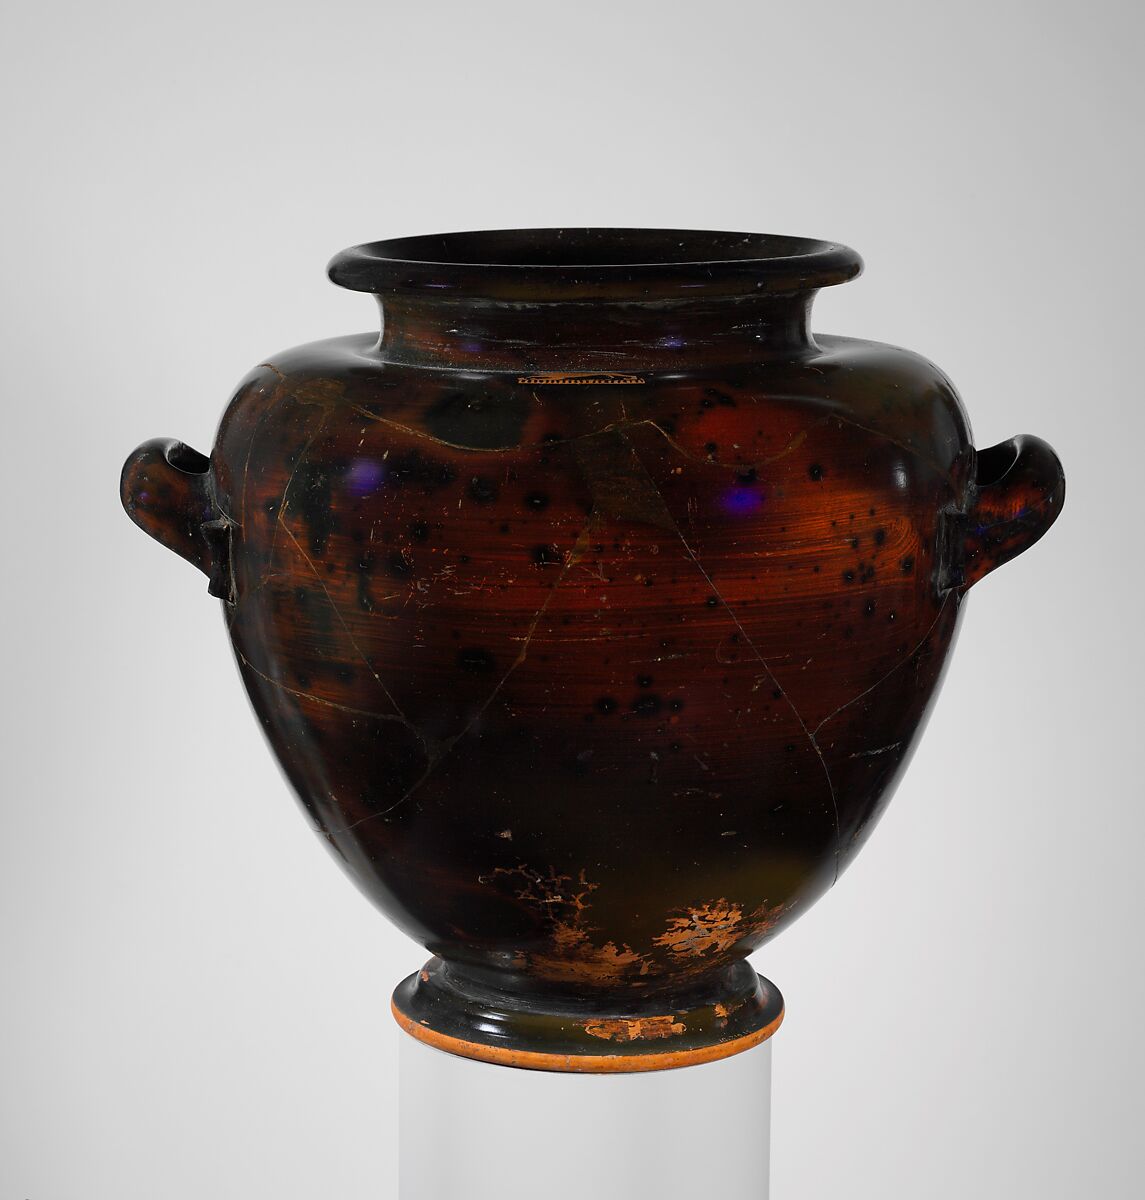 Terracotta stamnos (jar), Terracotta, Greek, Attic 